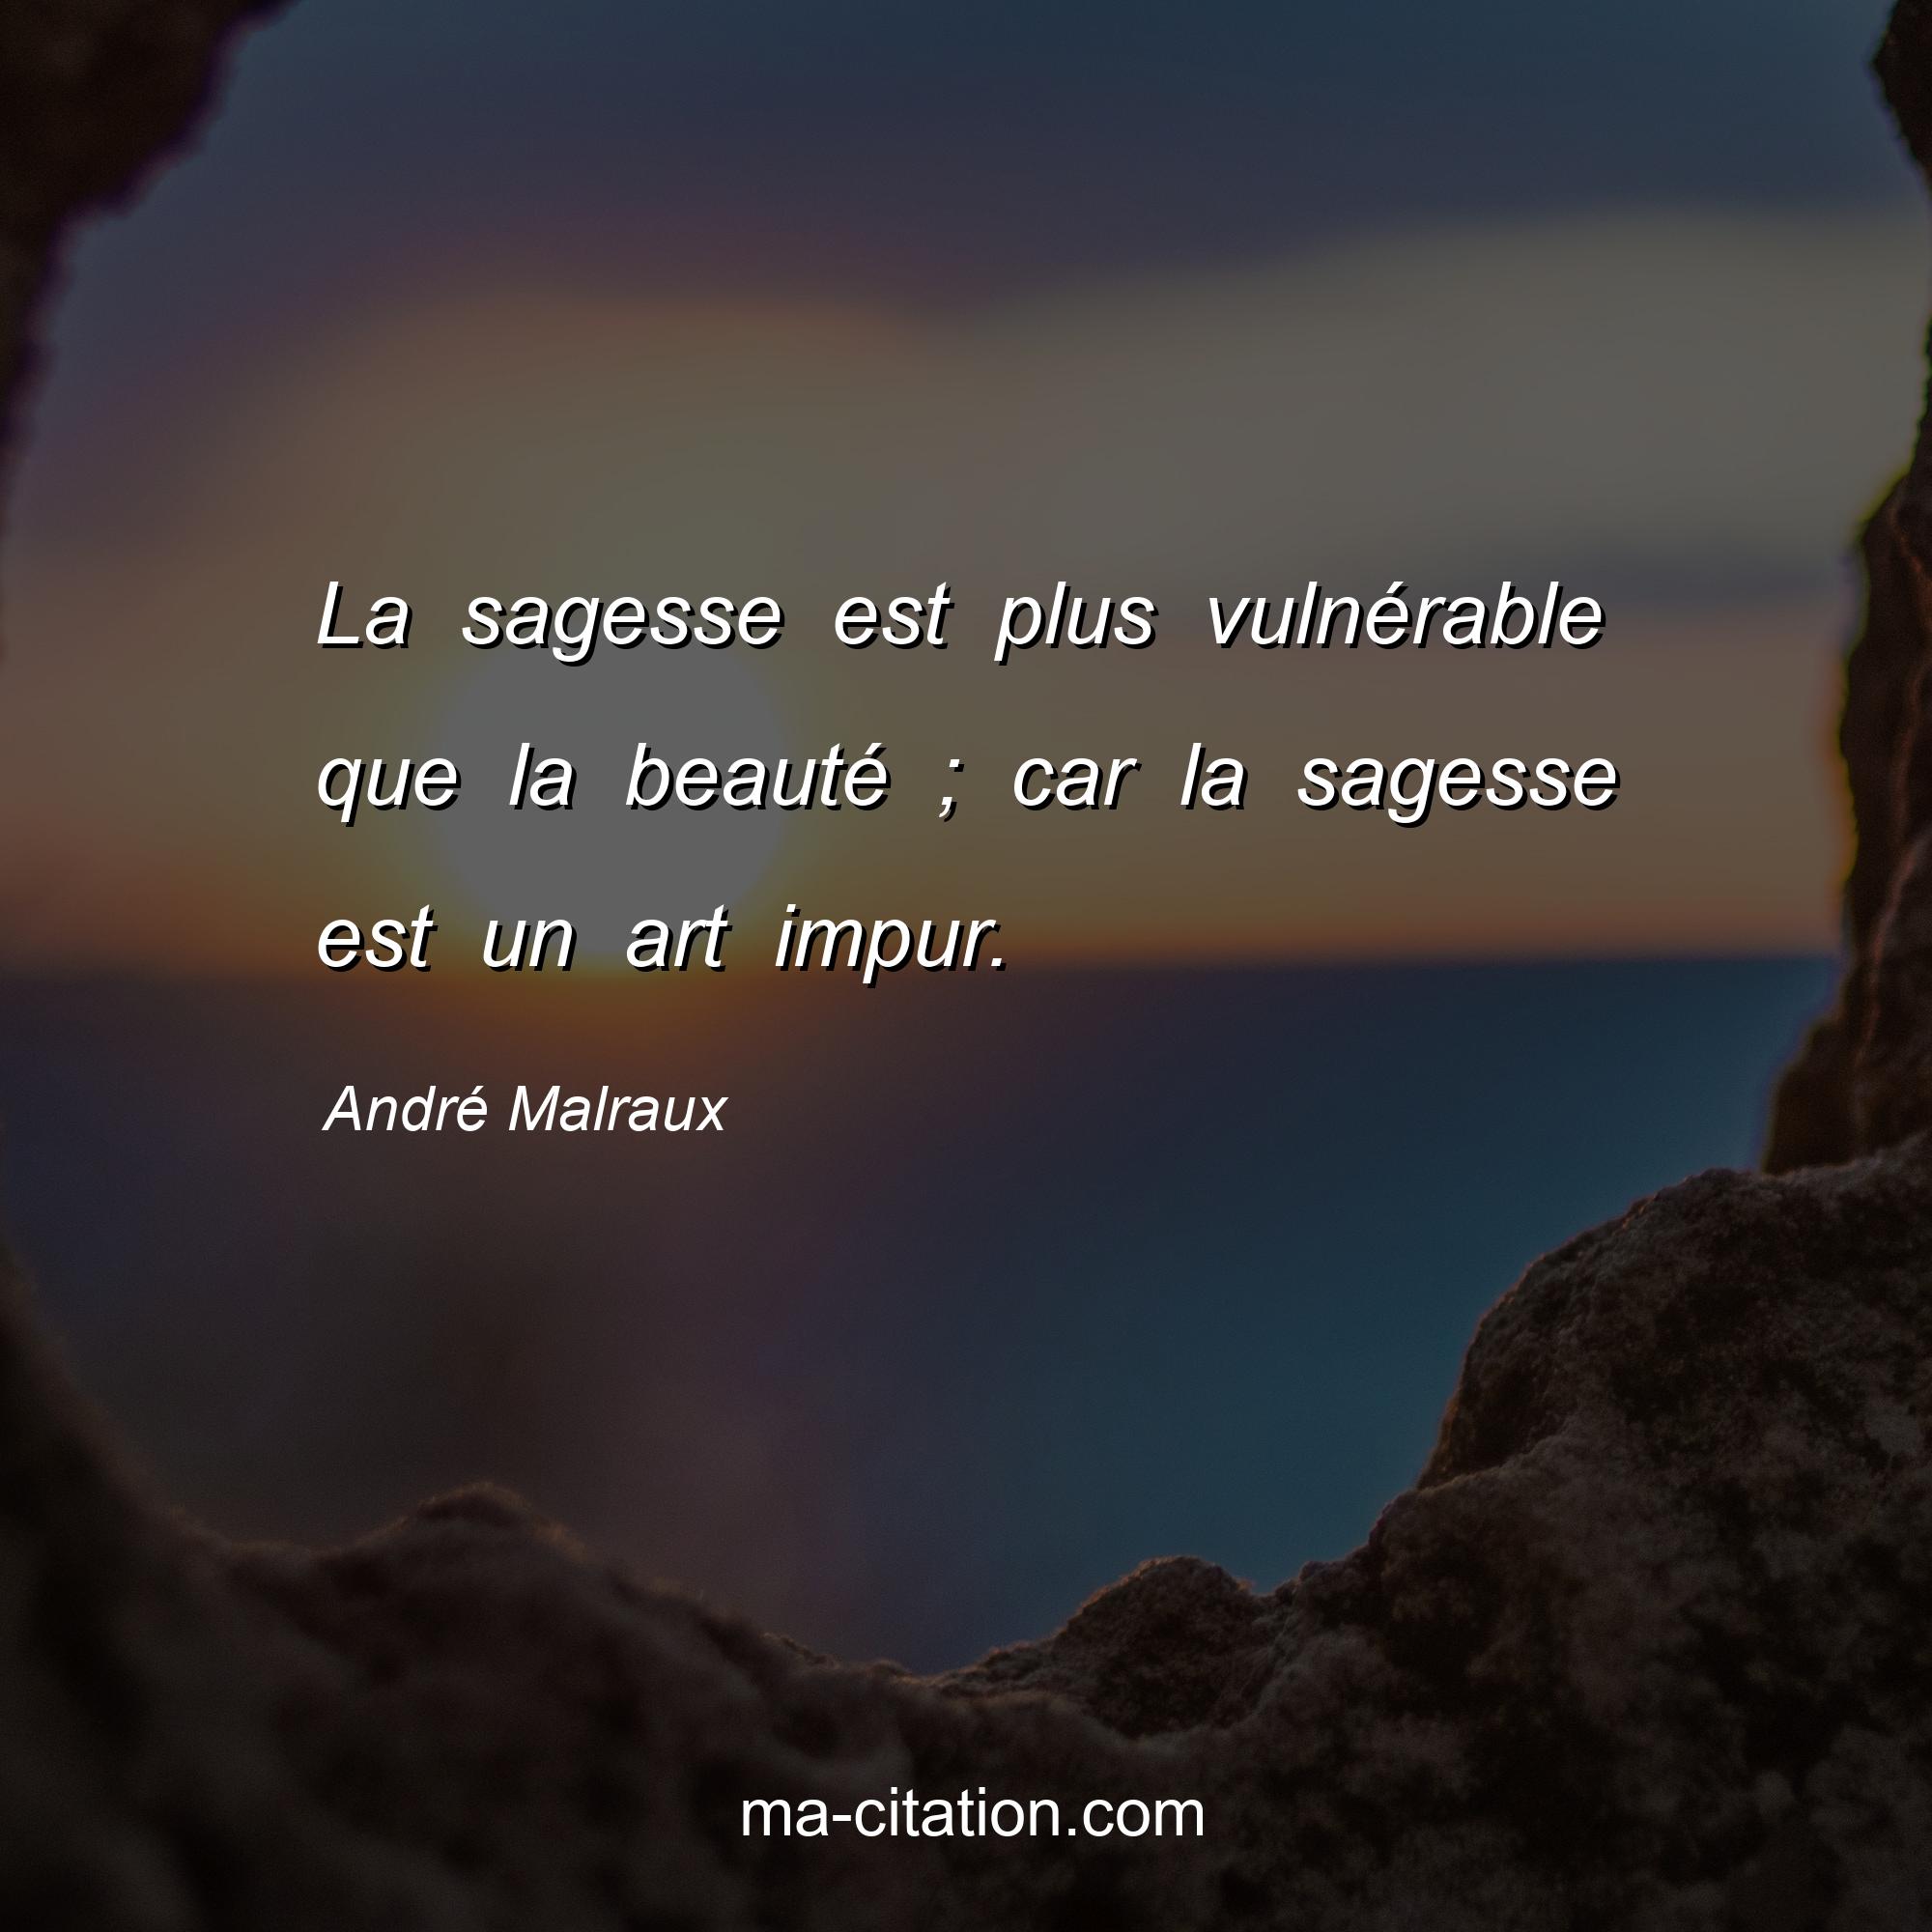 André Malraux : La sagesse est plus vulnérable que la beauté ; car la sagesse est un art impur.